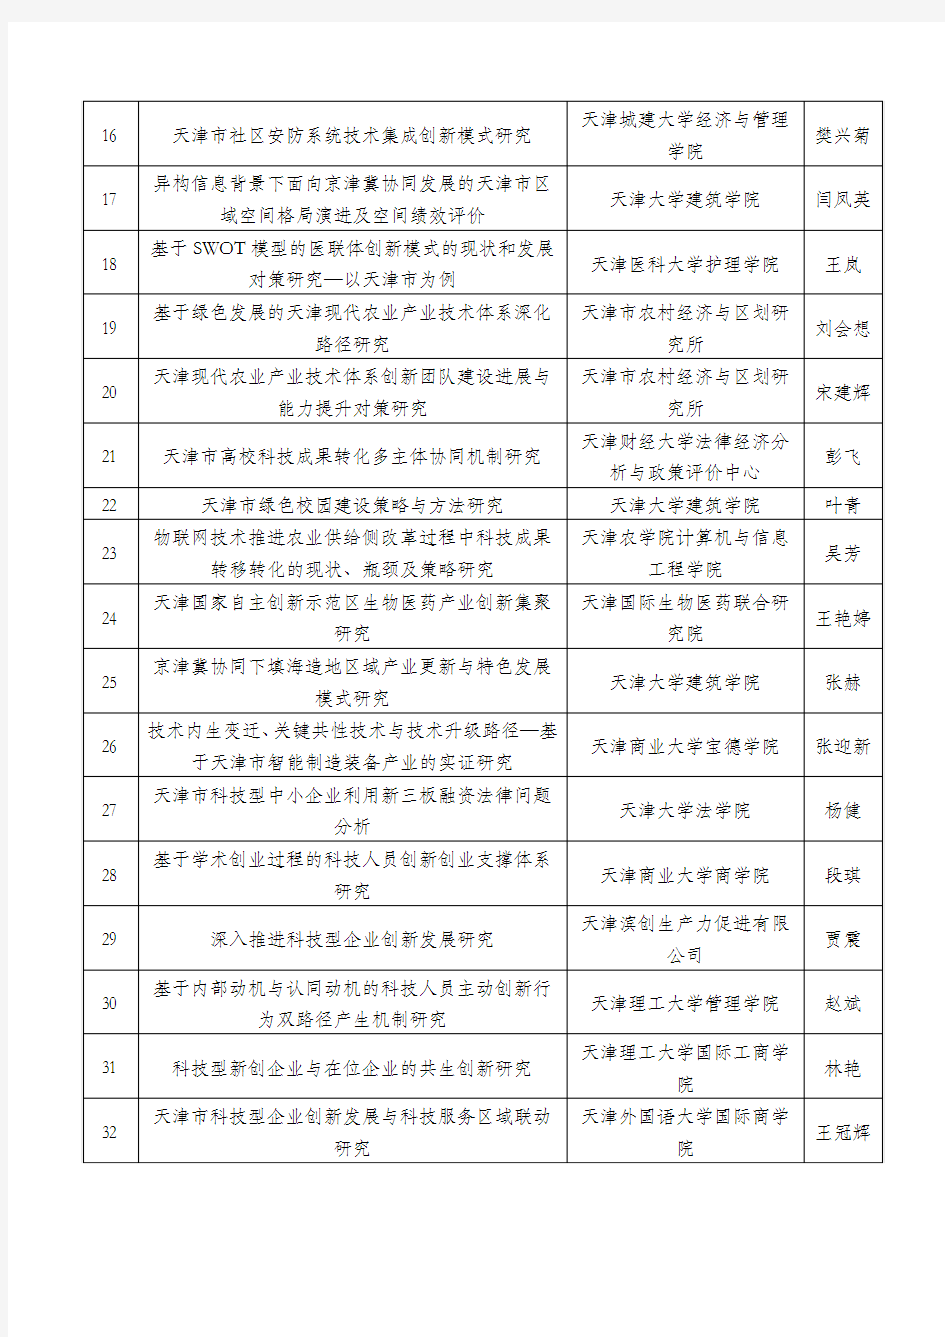 2017年天津市科技发展战略研究计划项目拟立项清单